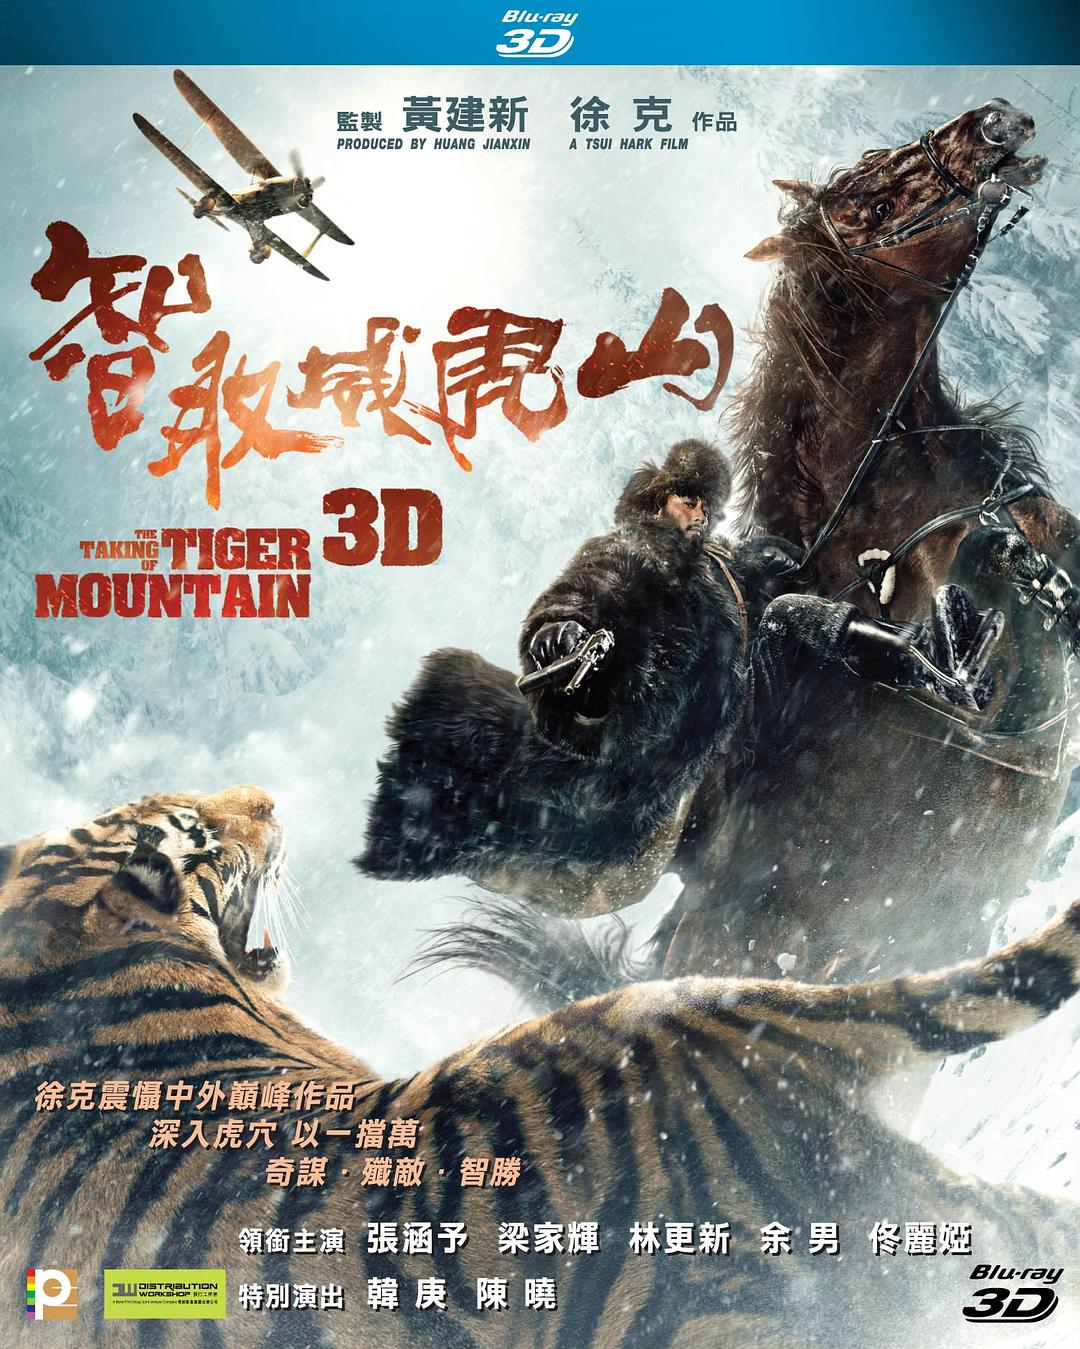 智取威虎山/智取威虎山3D/林海雪原3D [原盘国语 DIY简繁中字] The Taking of Tiger Mountain 2014 HKG Blu-ray 3D 1080p AVC TrueHD 5.1-Pete@HDSky[44.90GB]-1.jpg